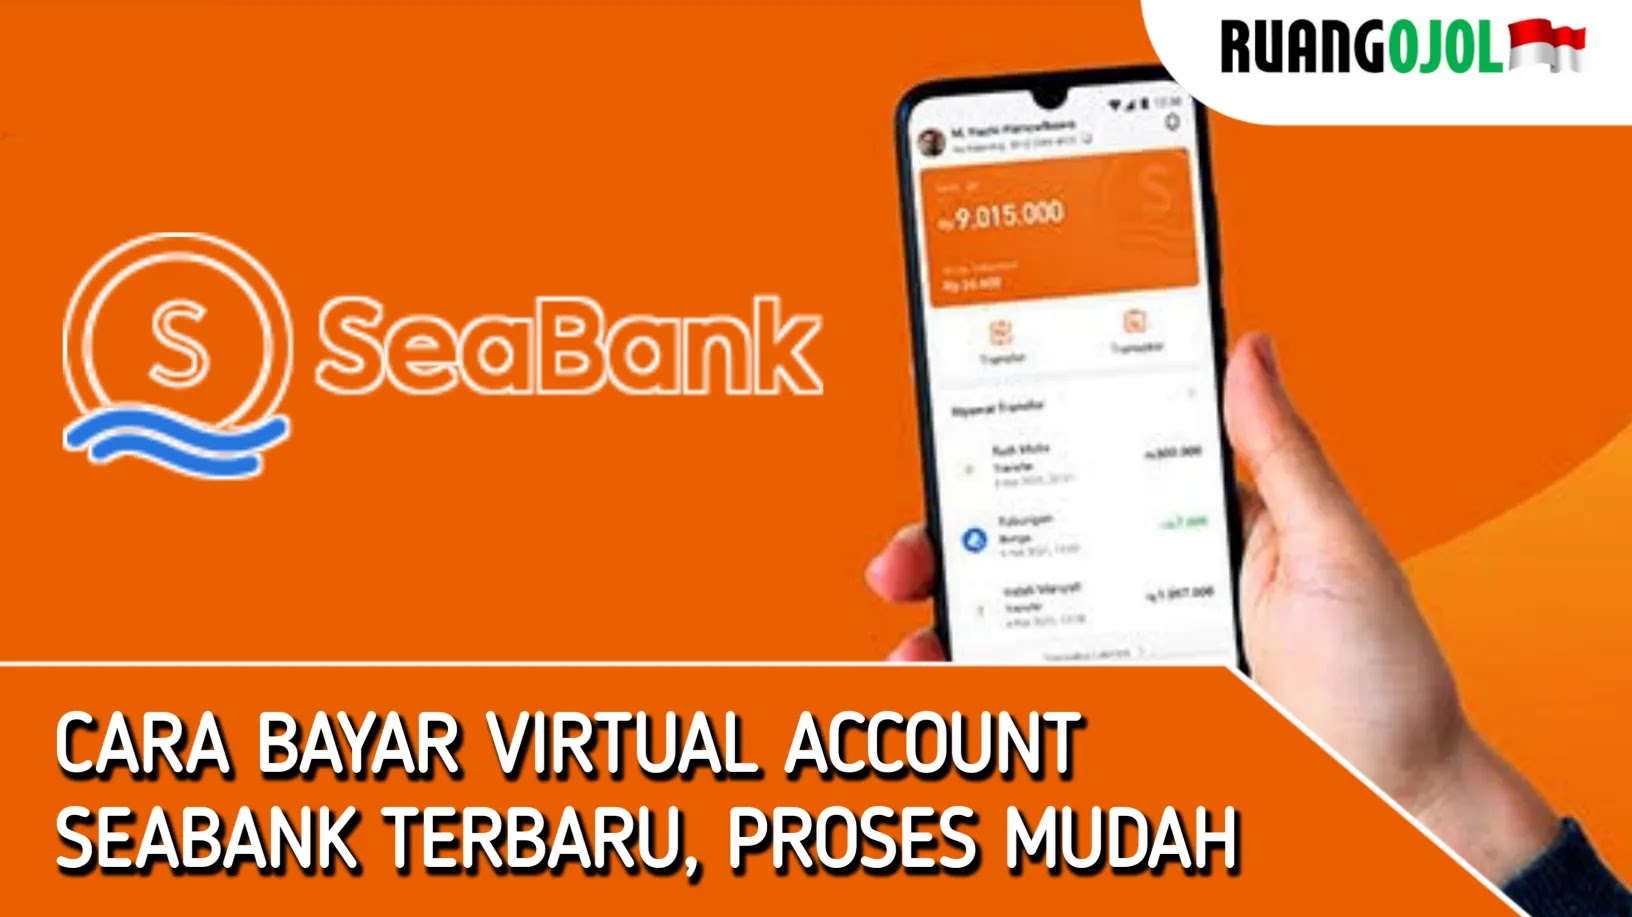 Cara pakai virtual account seabank